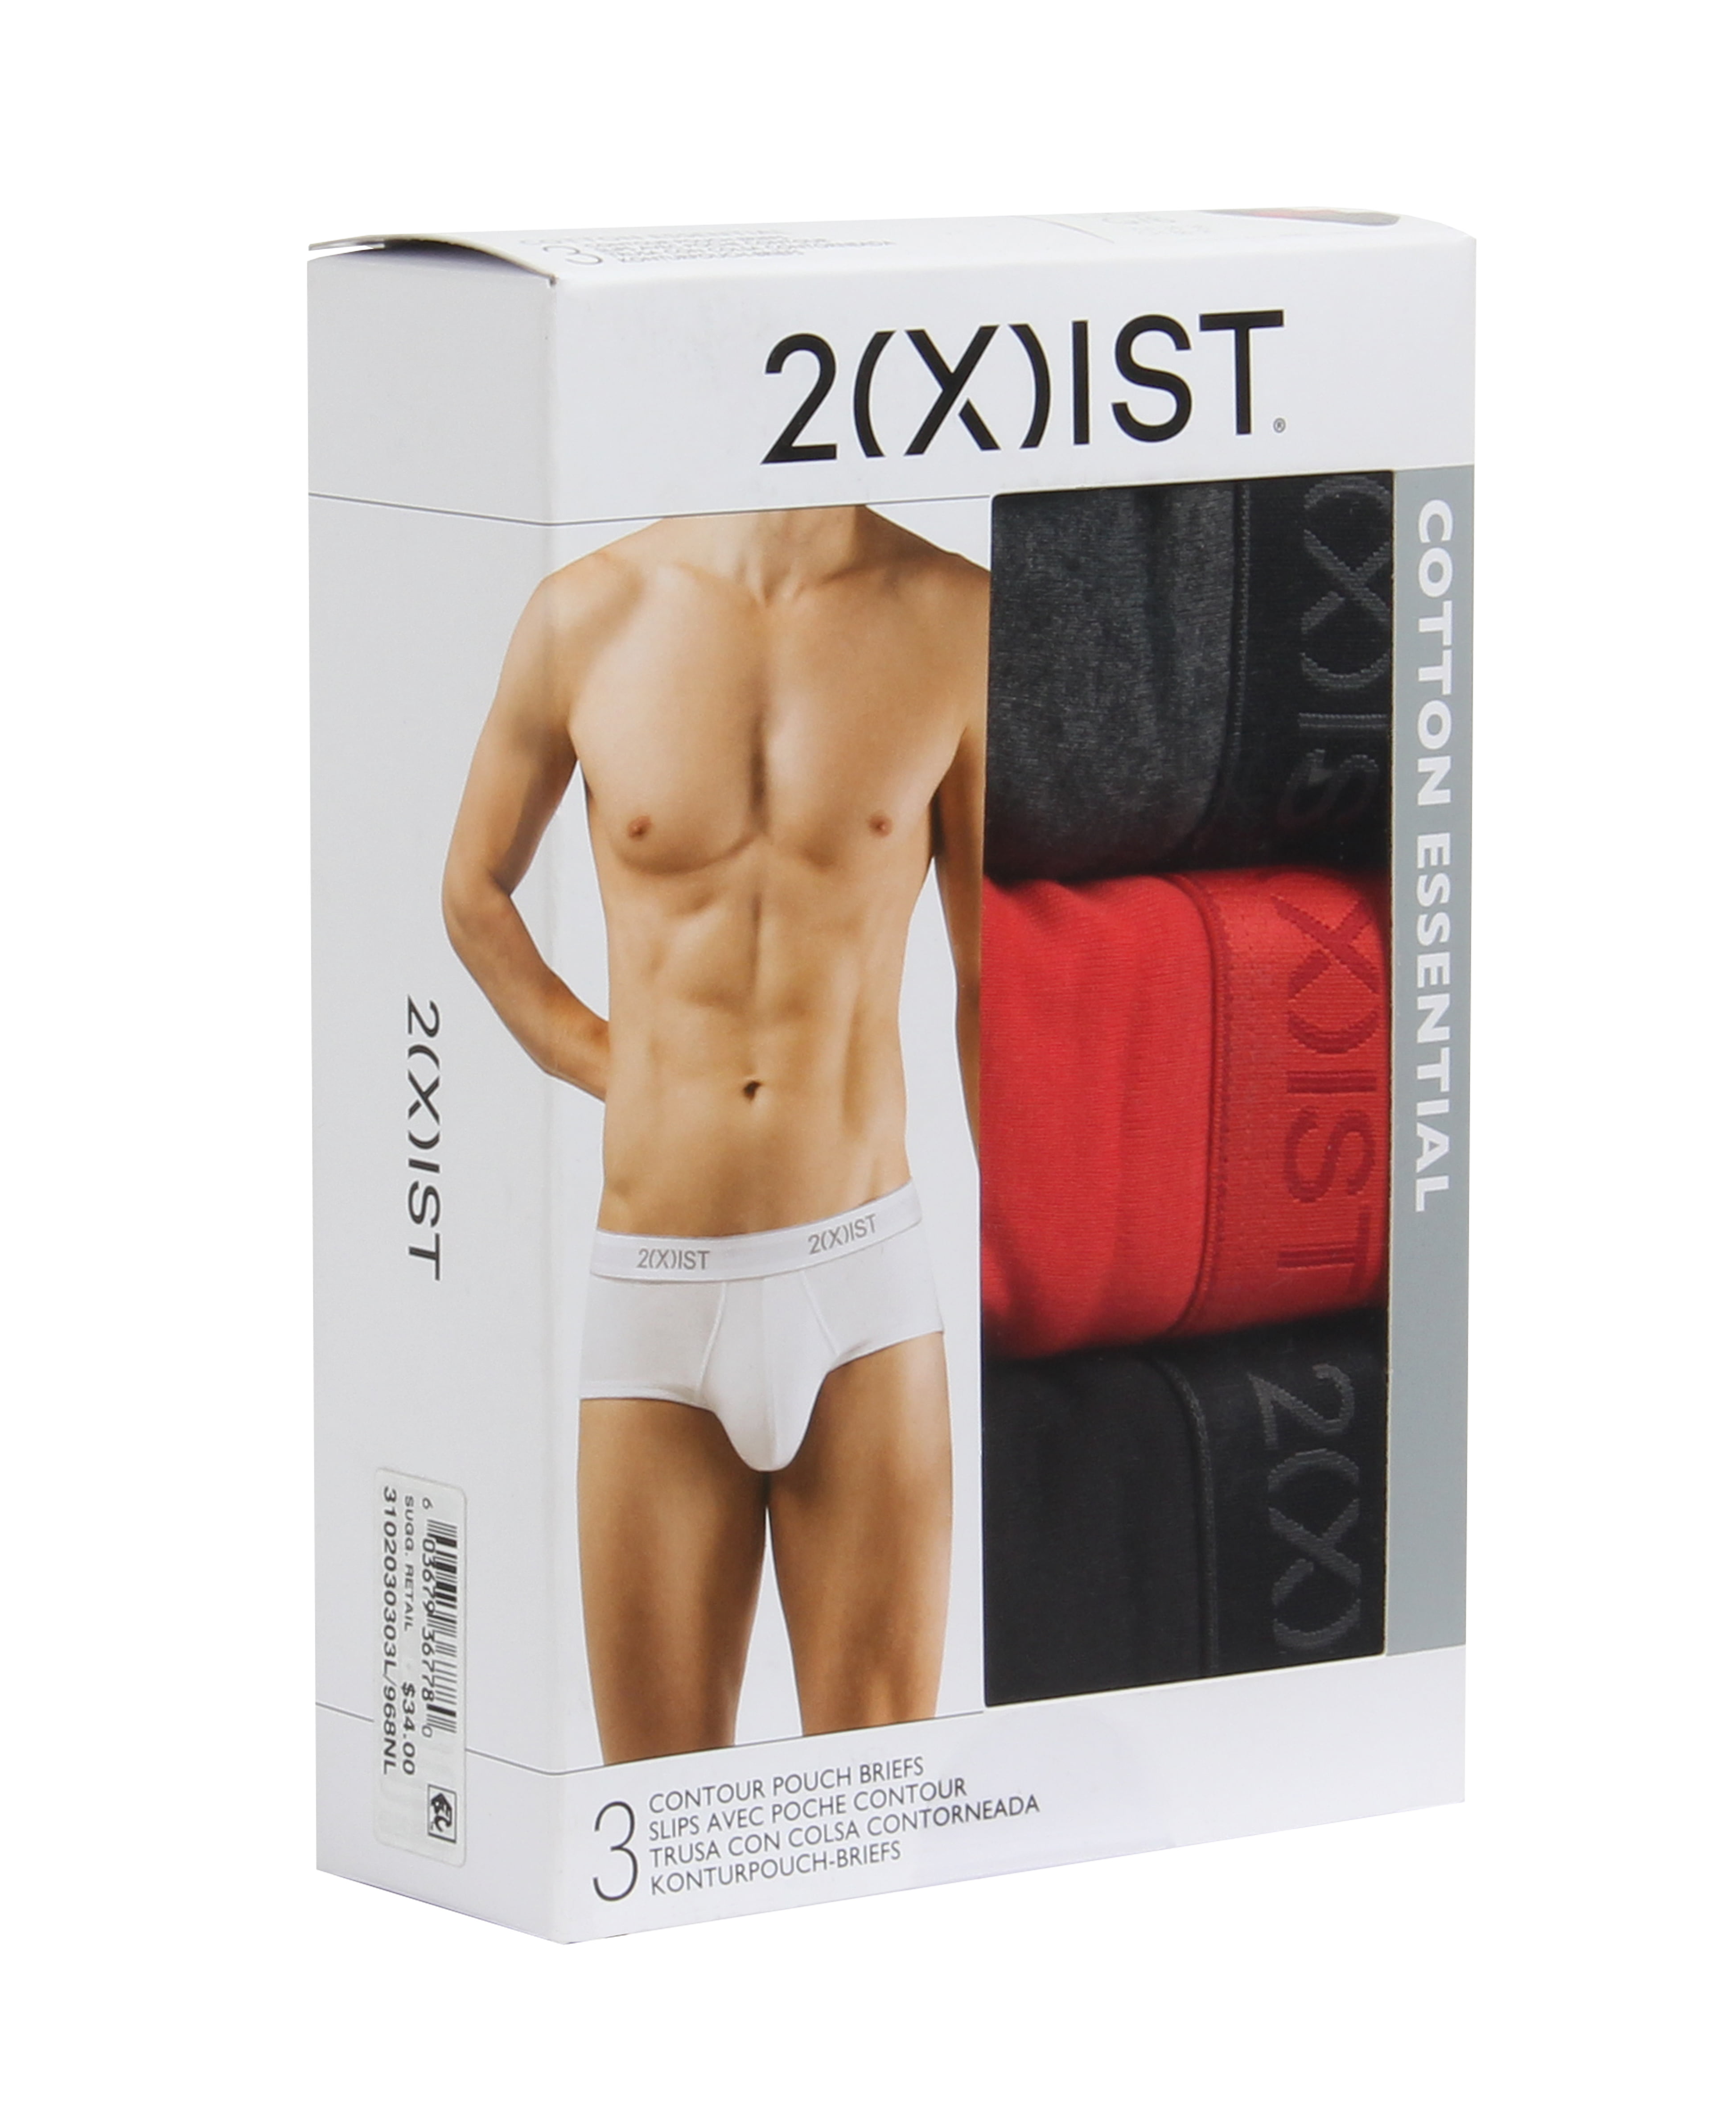 2(X)IST Men's Essential Cotton 3 Pack Contour Pouch Brief - 3102030303 